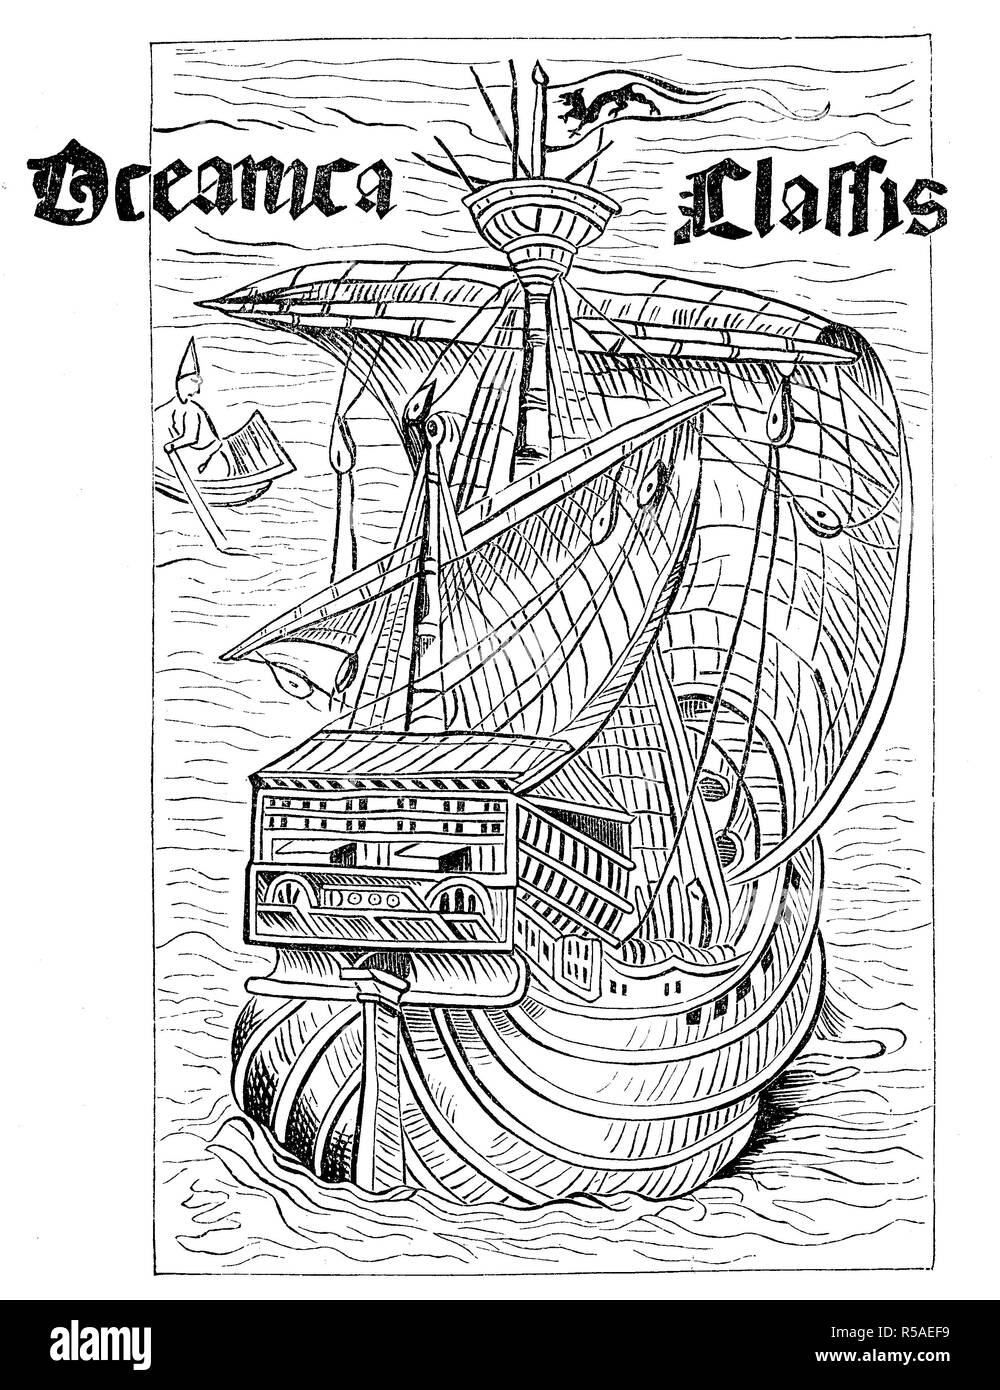 Zeichnung eines spanischen Schiffes aus der Zeit der Entdeckung Amerikas, um 1492, Holzschnitt, Spanien Stockfoto